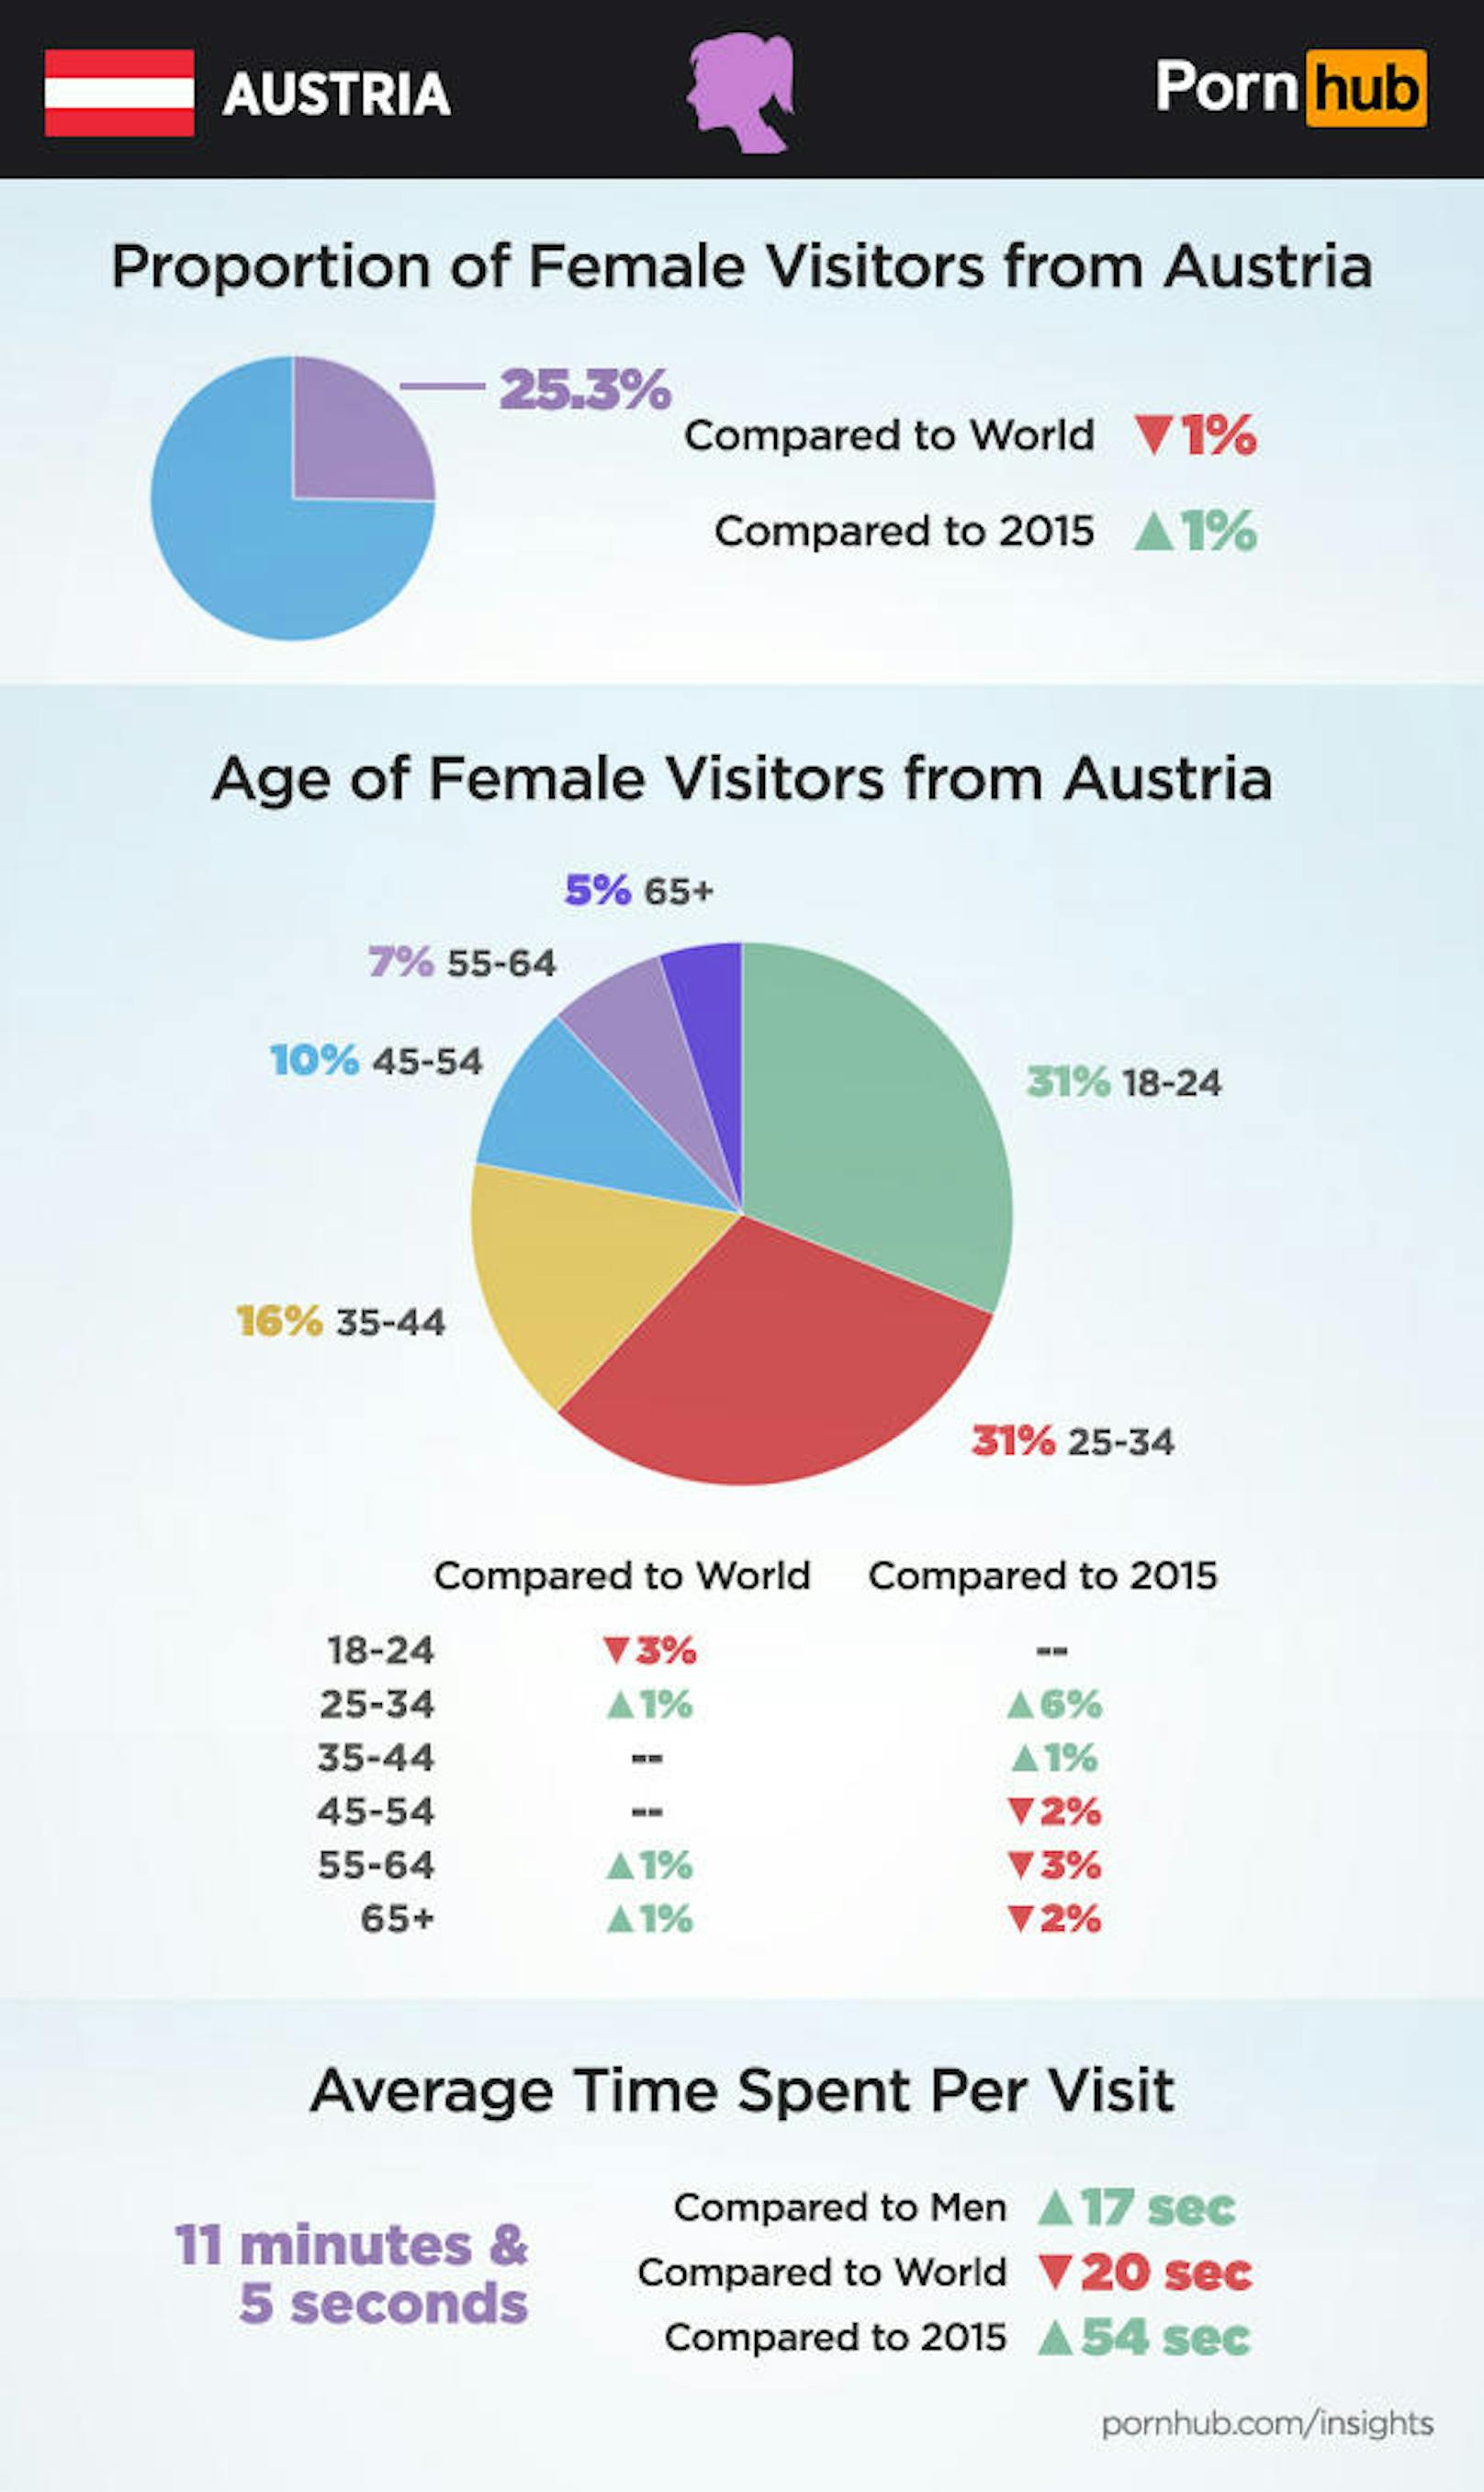 Frauen machen ziemlich genau ein Viertel der österreichischen Pornhub-Nutzer aus. Die am häufigsten vertretenen Altersstufen sind mit jeweils einem Drittel 18-24 und 25-34.